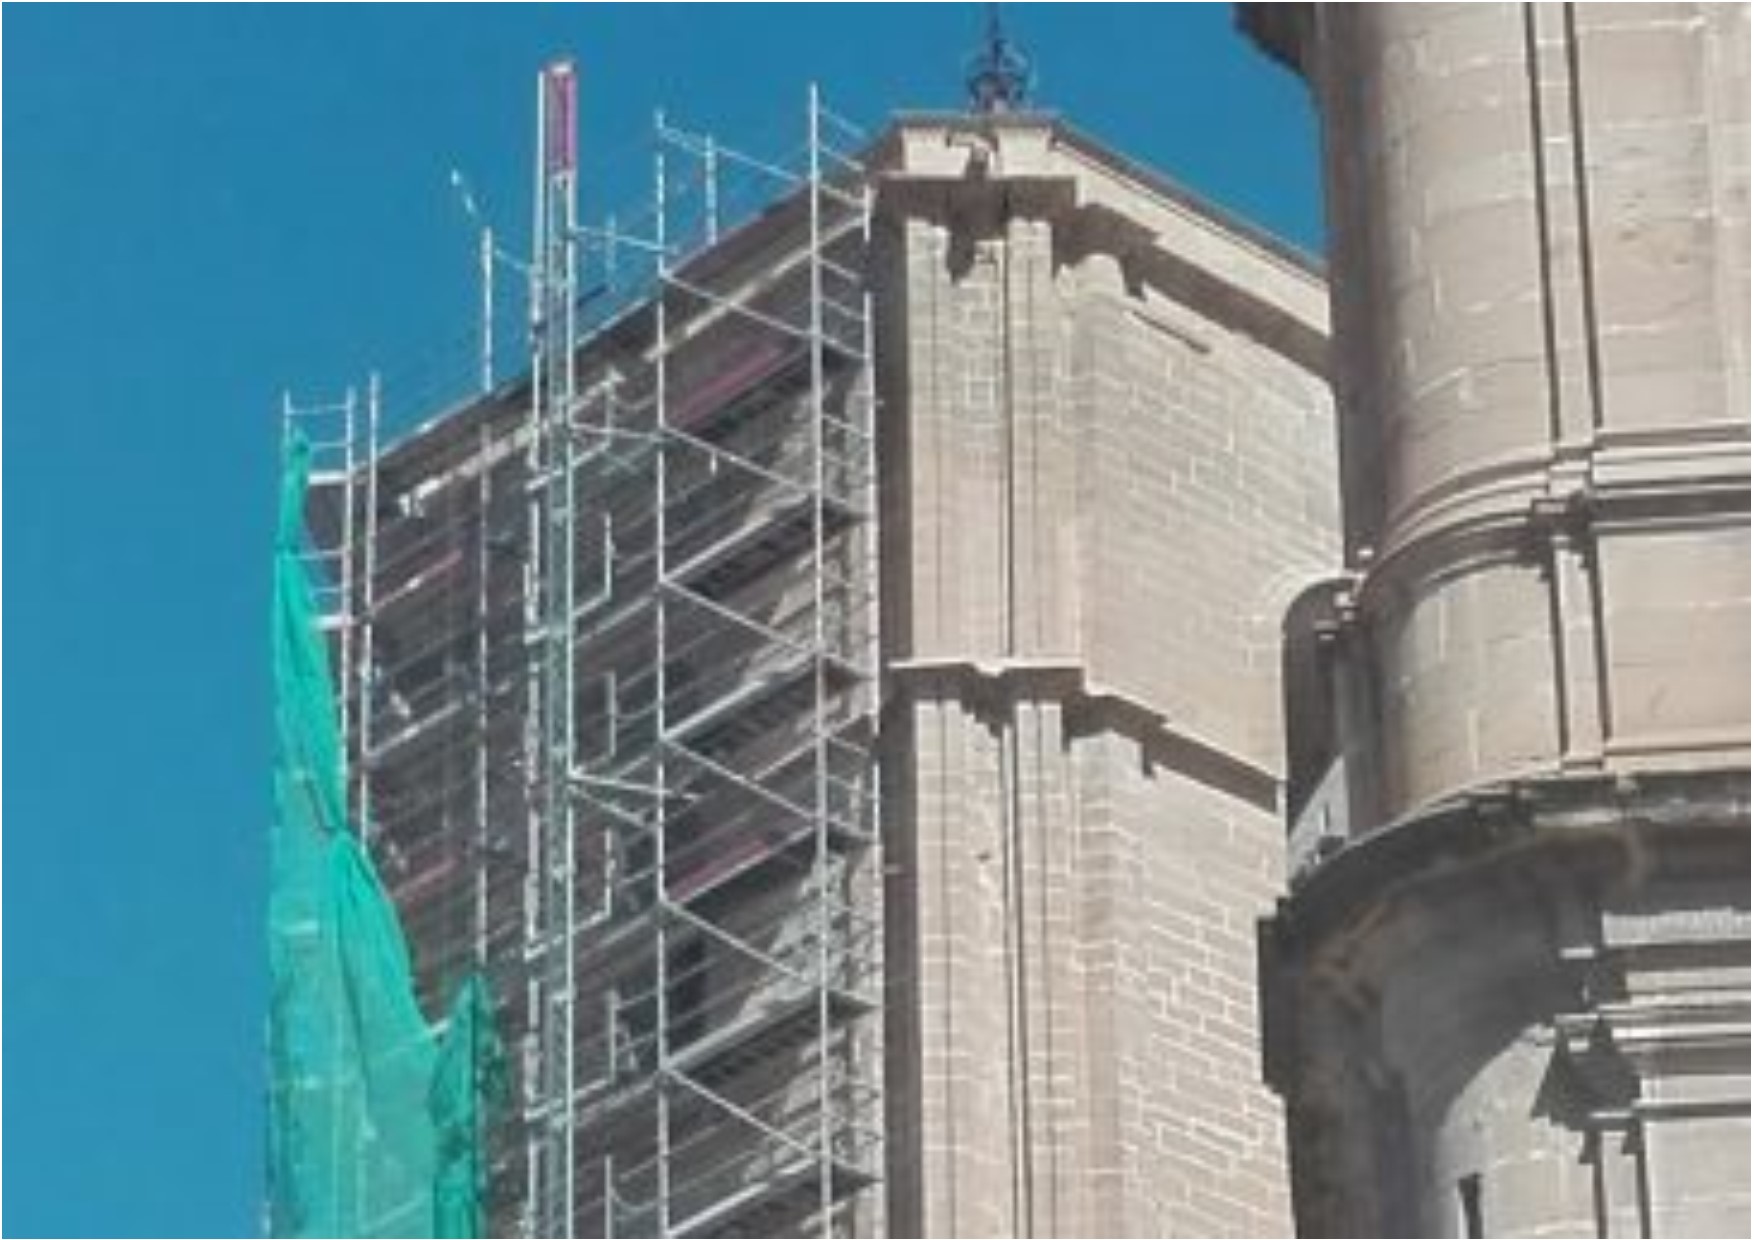 Noticia Diario de Teruel: Patrimonio permitirá que la torre de las campanas de Alcañiz luzca sus elementos góticos